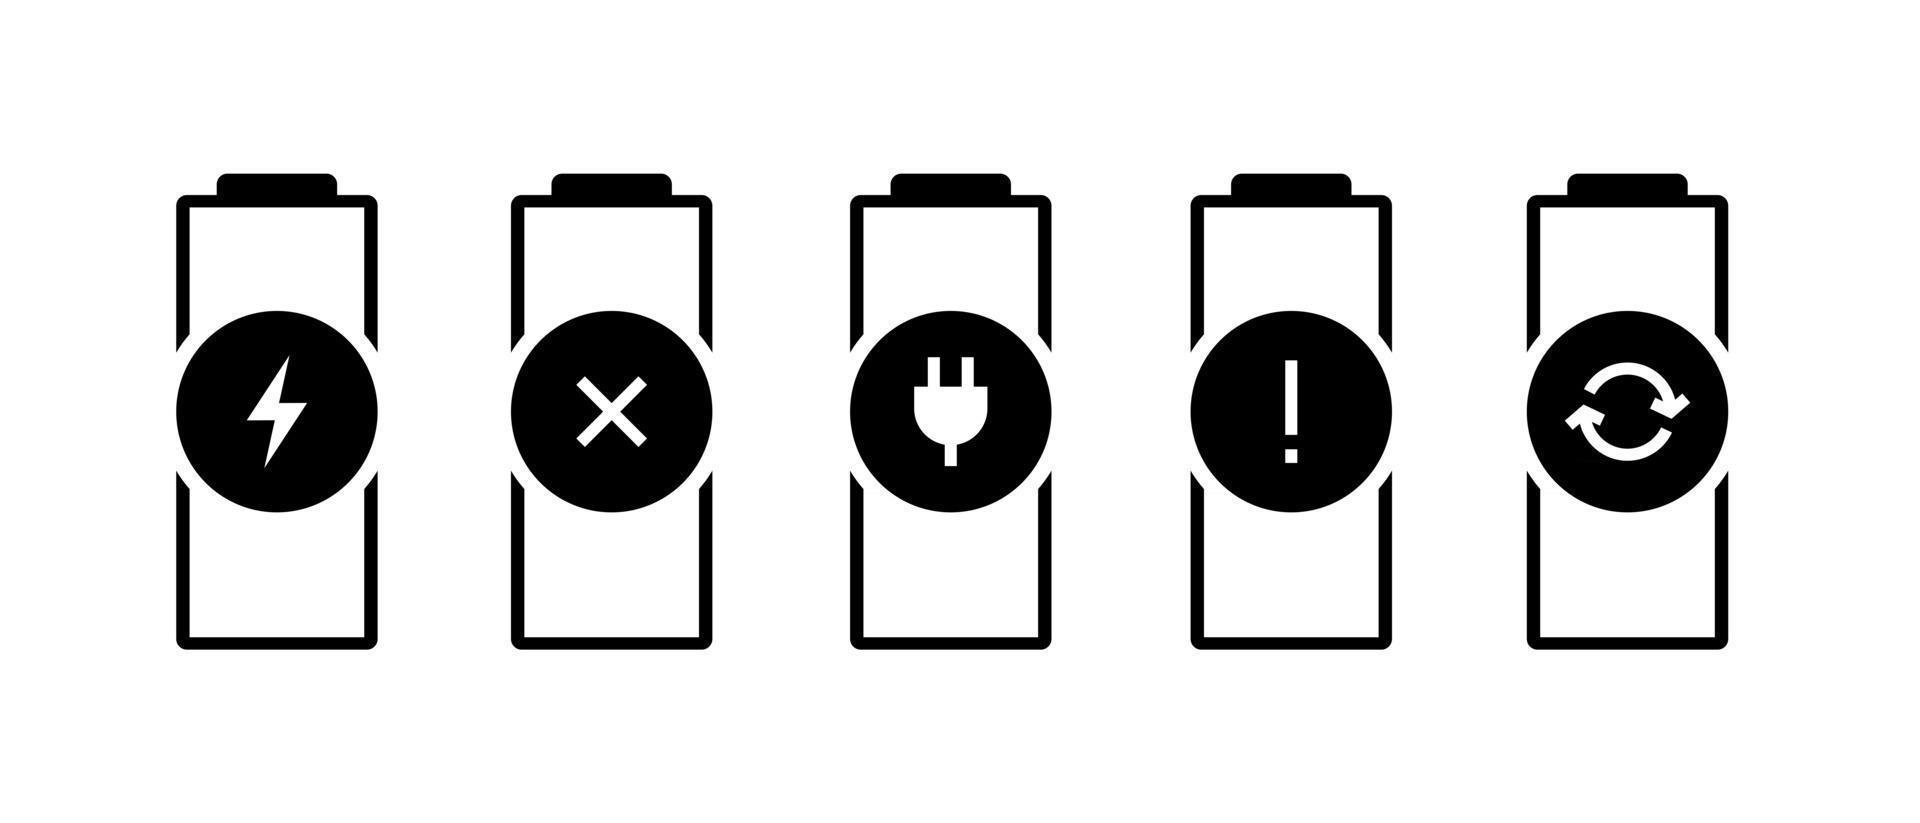 batterij indicator statuspictogram ingesteld. gadgets accu defect kapot moet opladen fout pictogrammen vervangen. vector macht illustratie